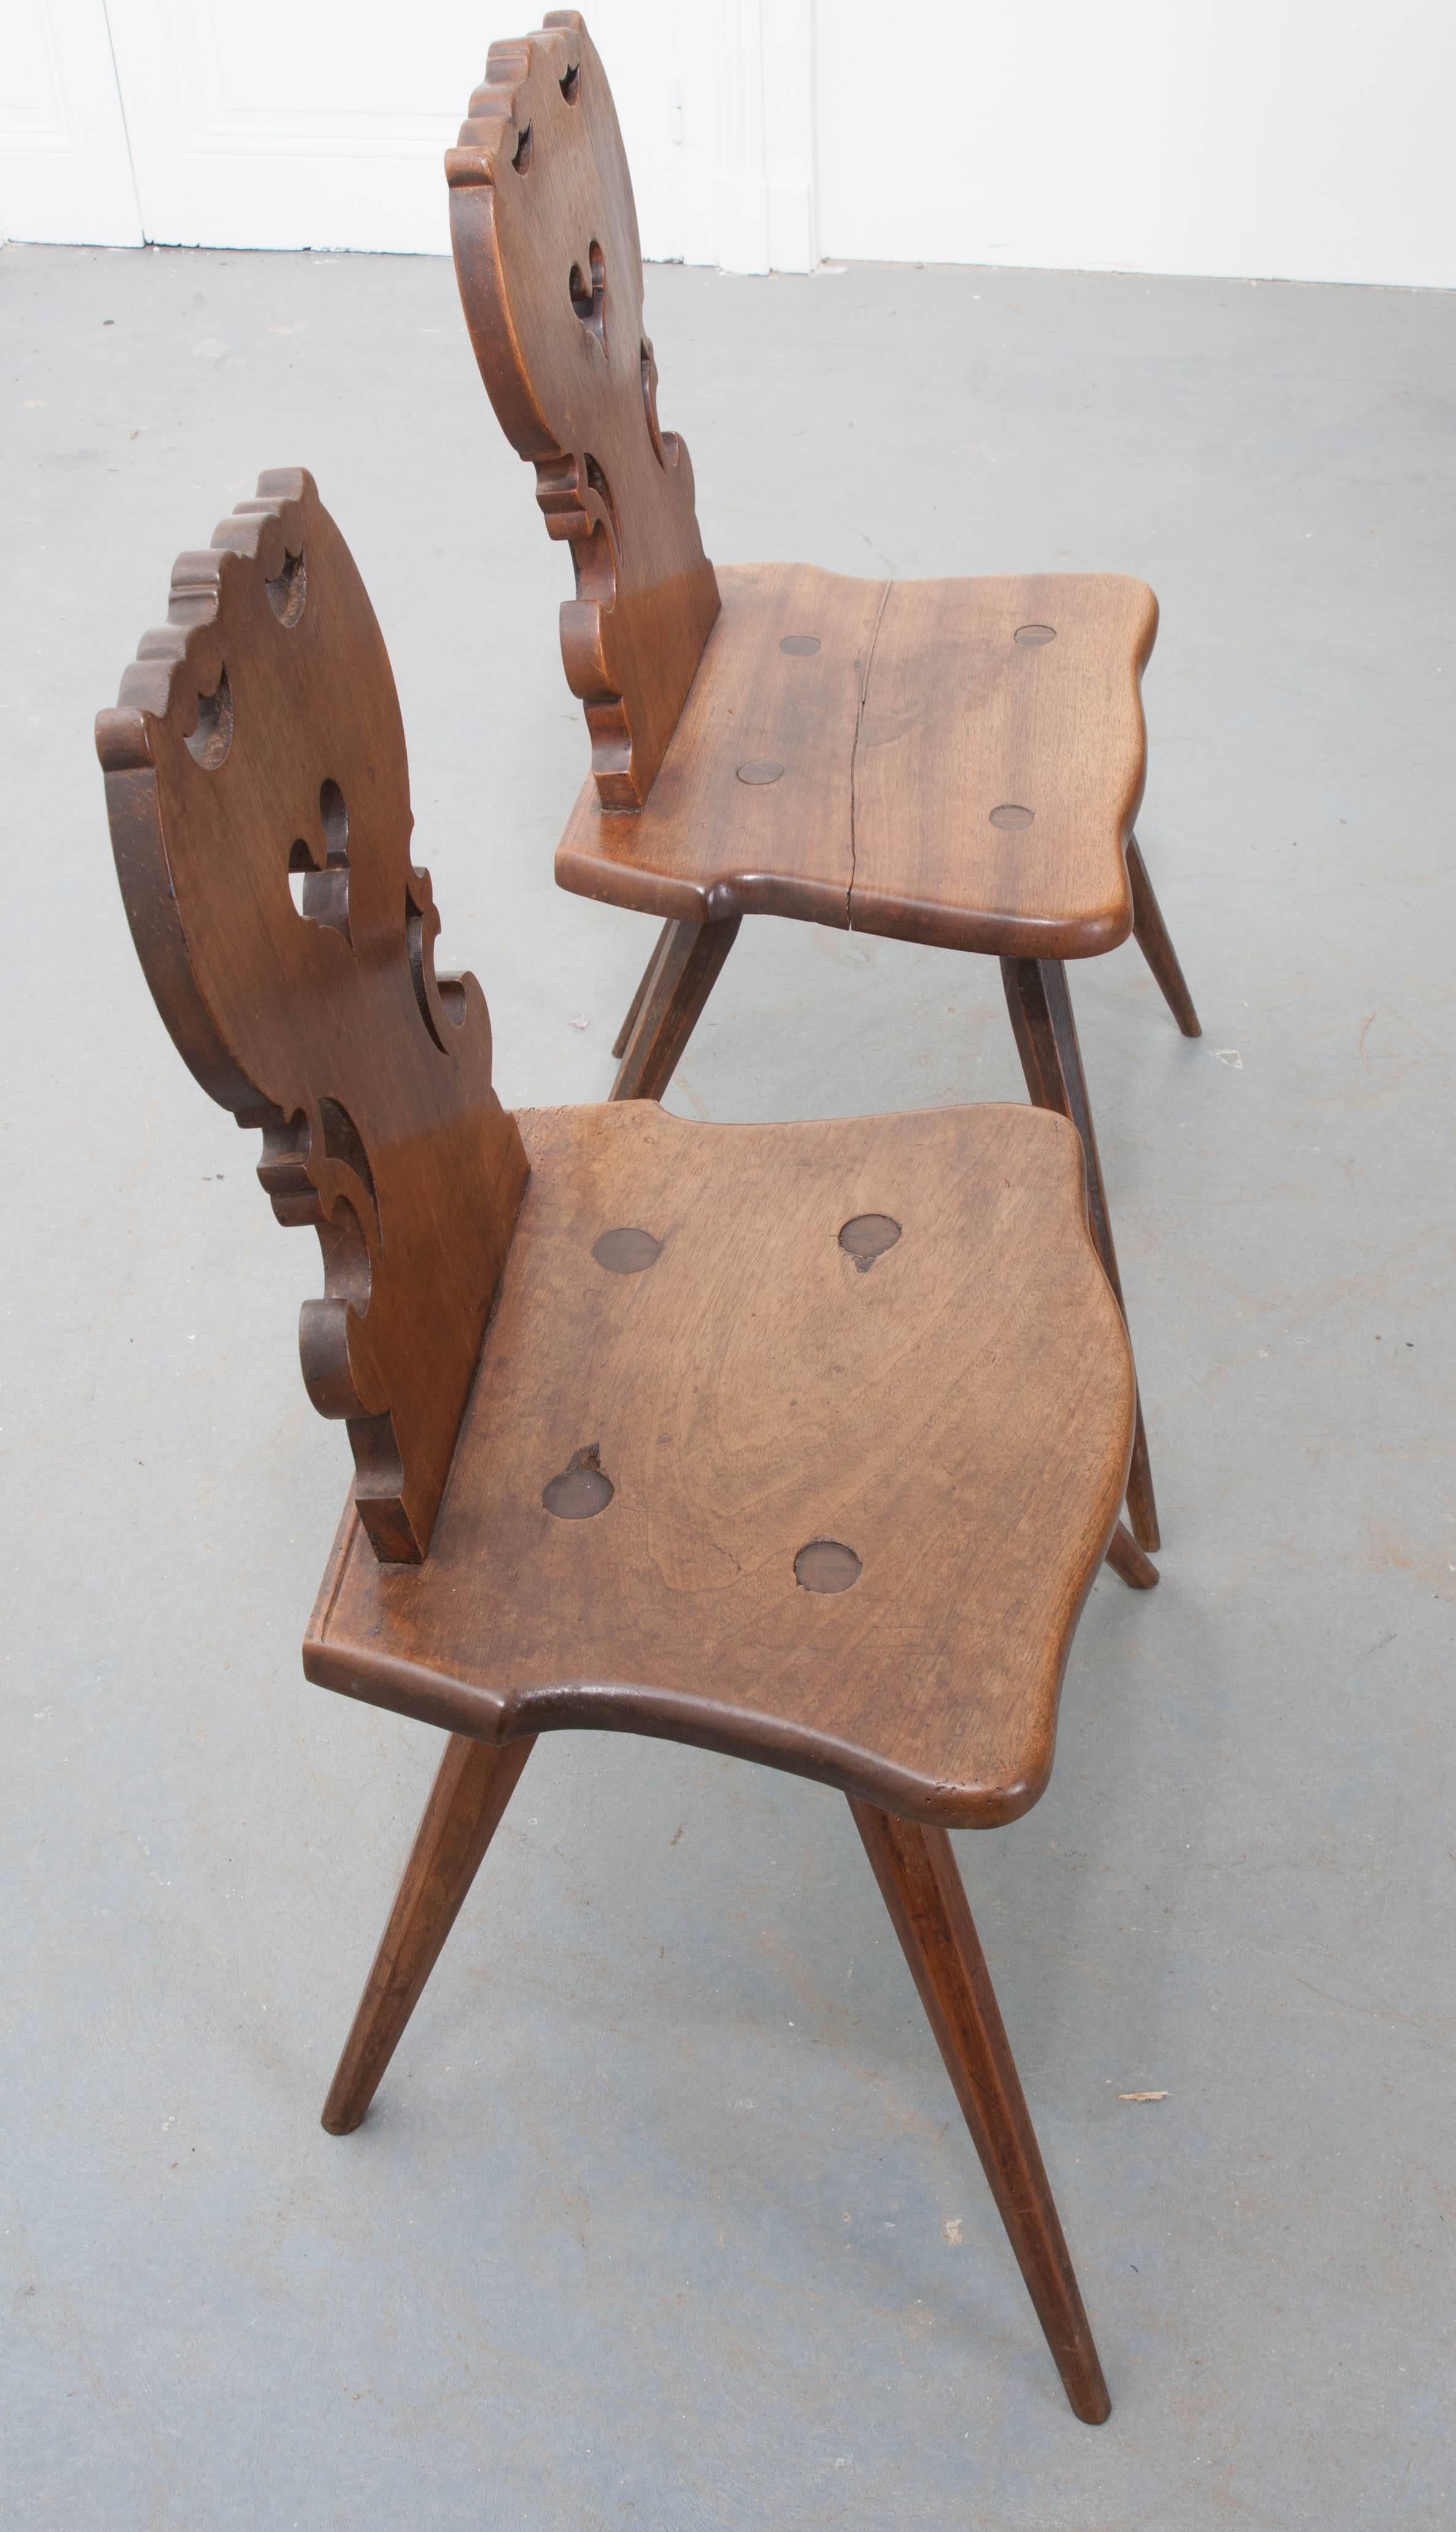 Français Paire de chaises alsaciennes du début du 19ème siècle sculptées à la main